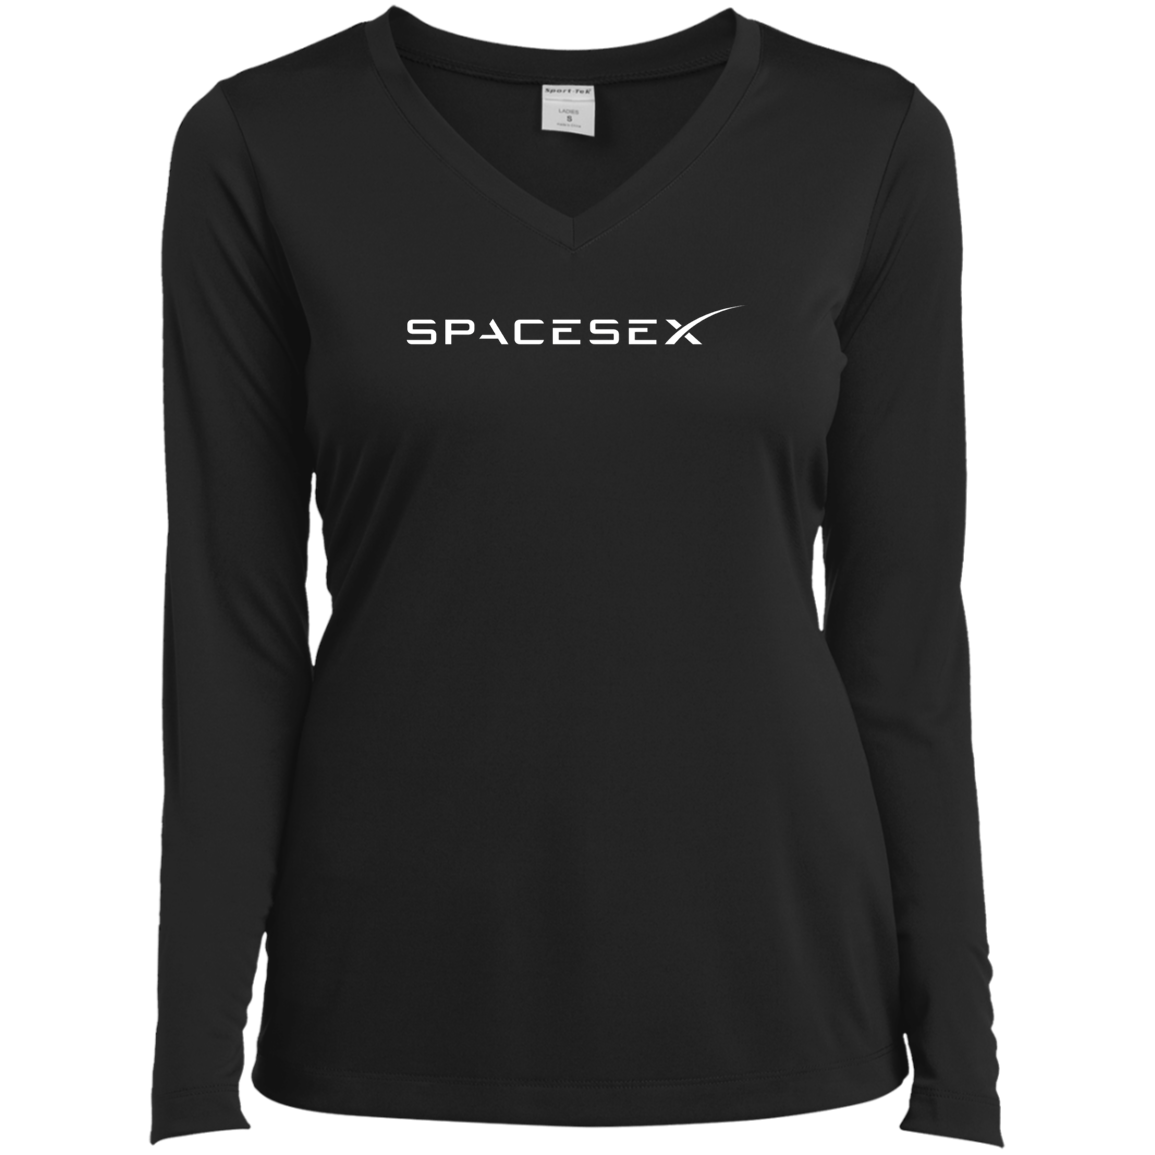 "SpaceseX" Ladies’ Long Sleeve Performance V-Neck Tee